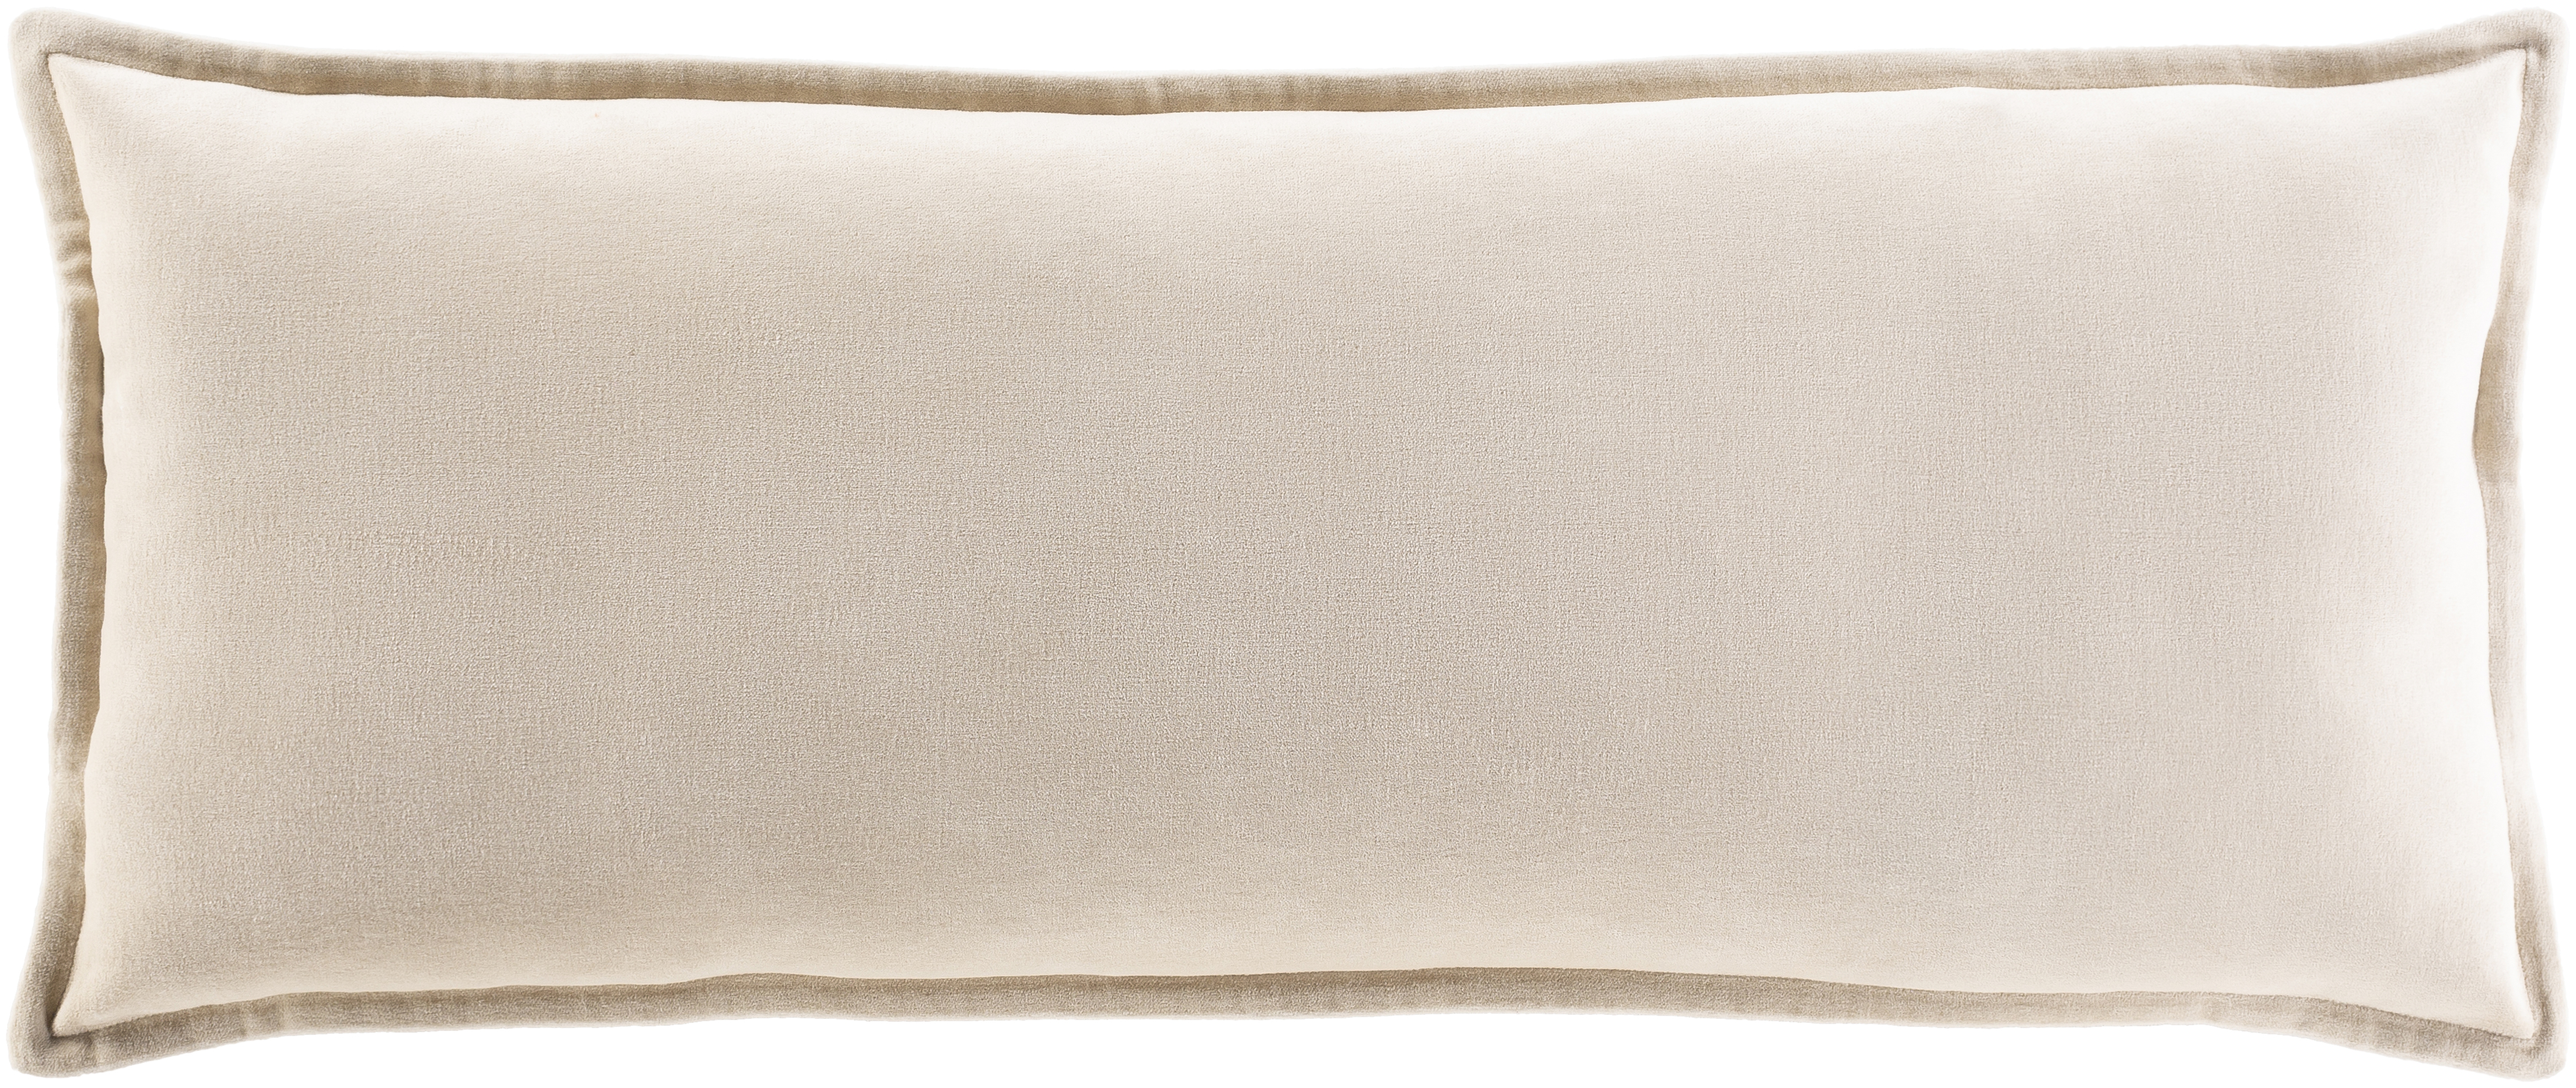 Cotton Velvet Lumbar Pillow, 30" x 12", Beige - Surya